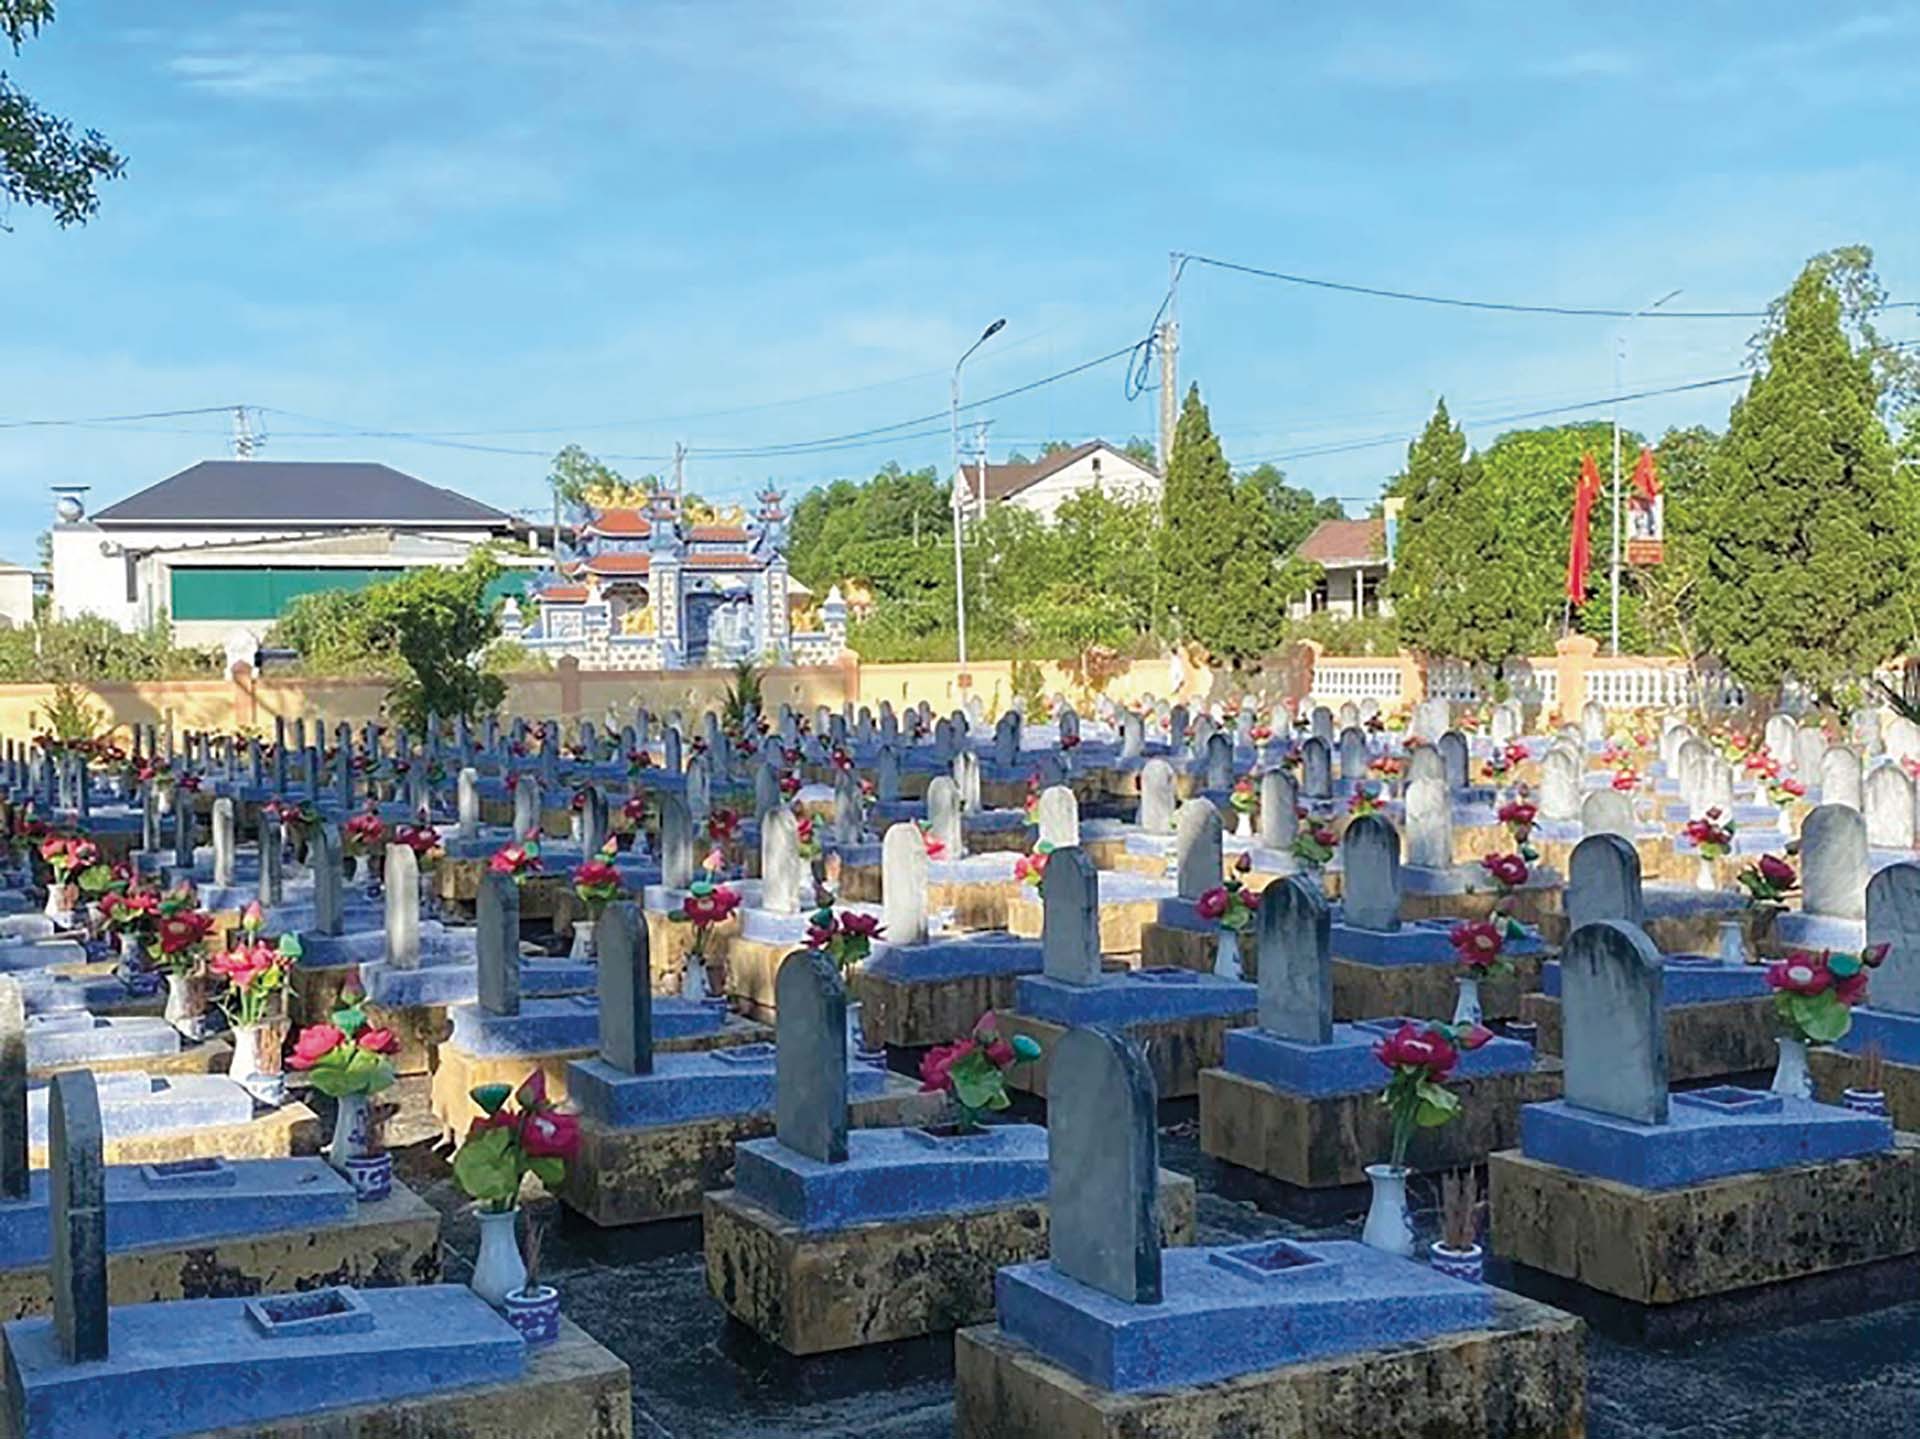 Nghĩa trang liệt sĩ xã Triệu Ái anh hùng hiện có 402 phần mộ liệt sĩ. (Ảnh: NVCC)